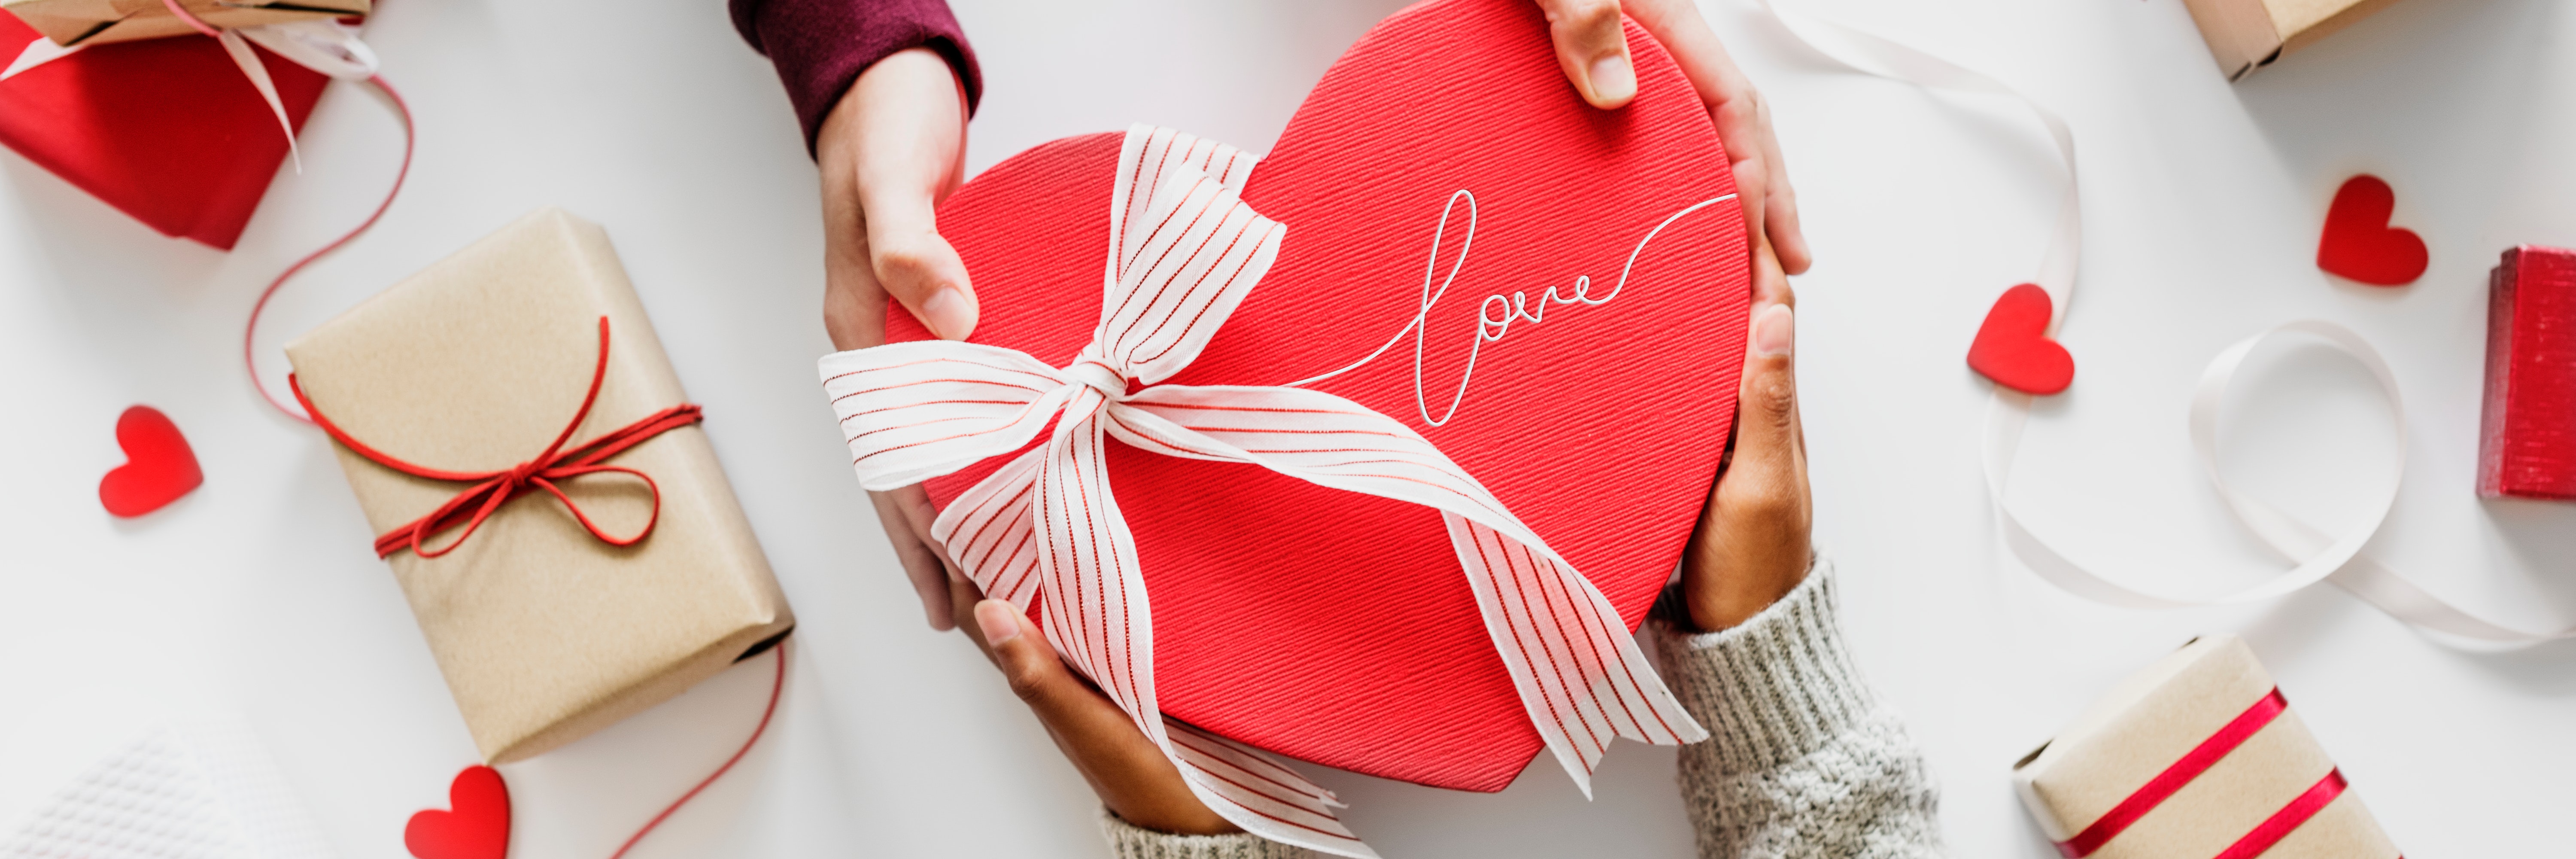 Ideen für ein kreatives Valentinstagsgeschenk 